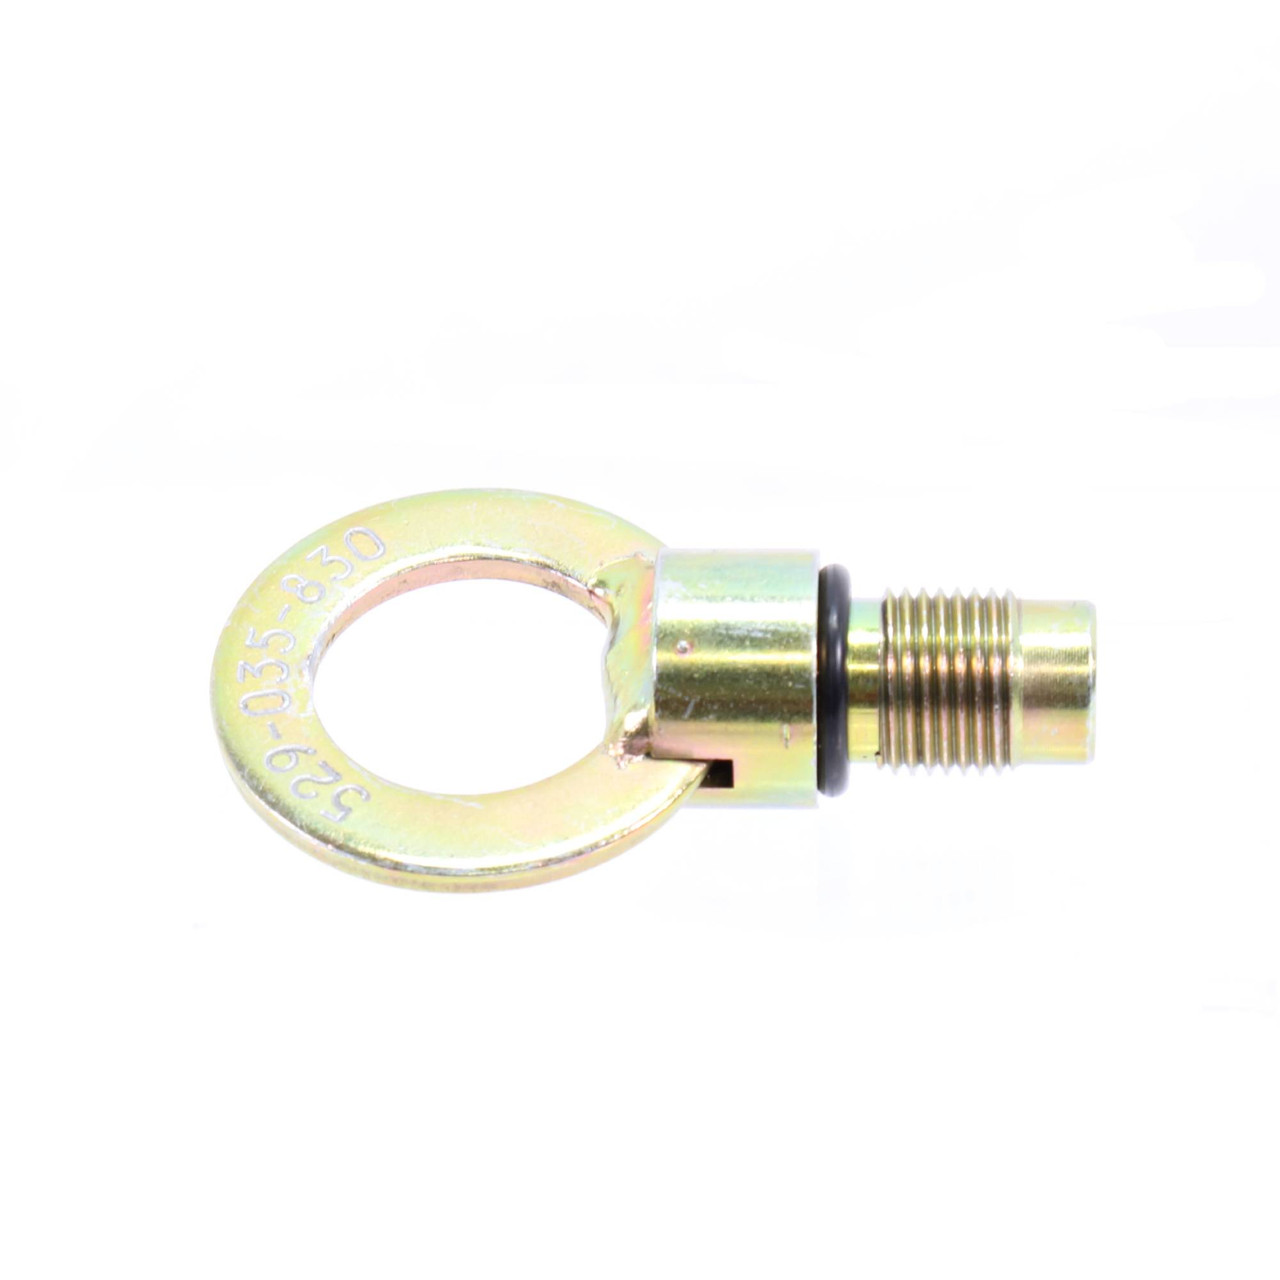 Sea-Doo New OEM Spark Plug Lift Tool, 529035830